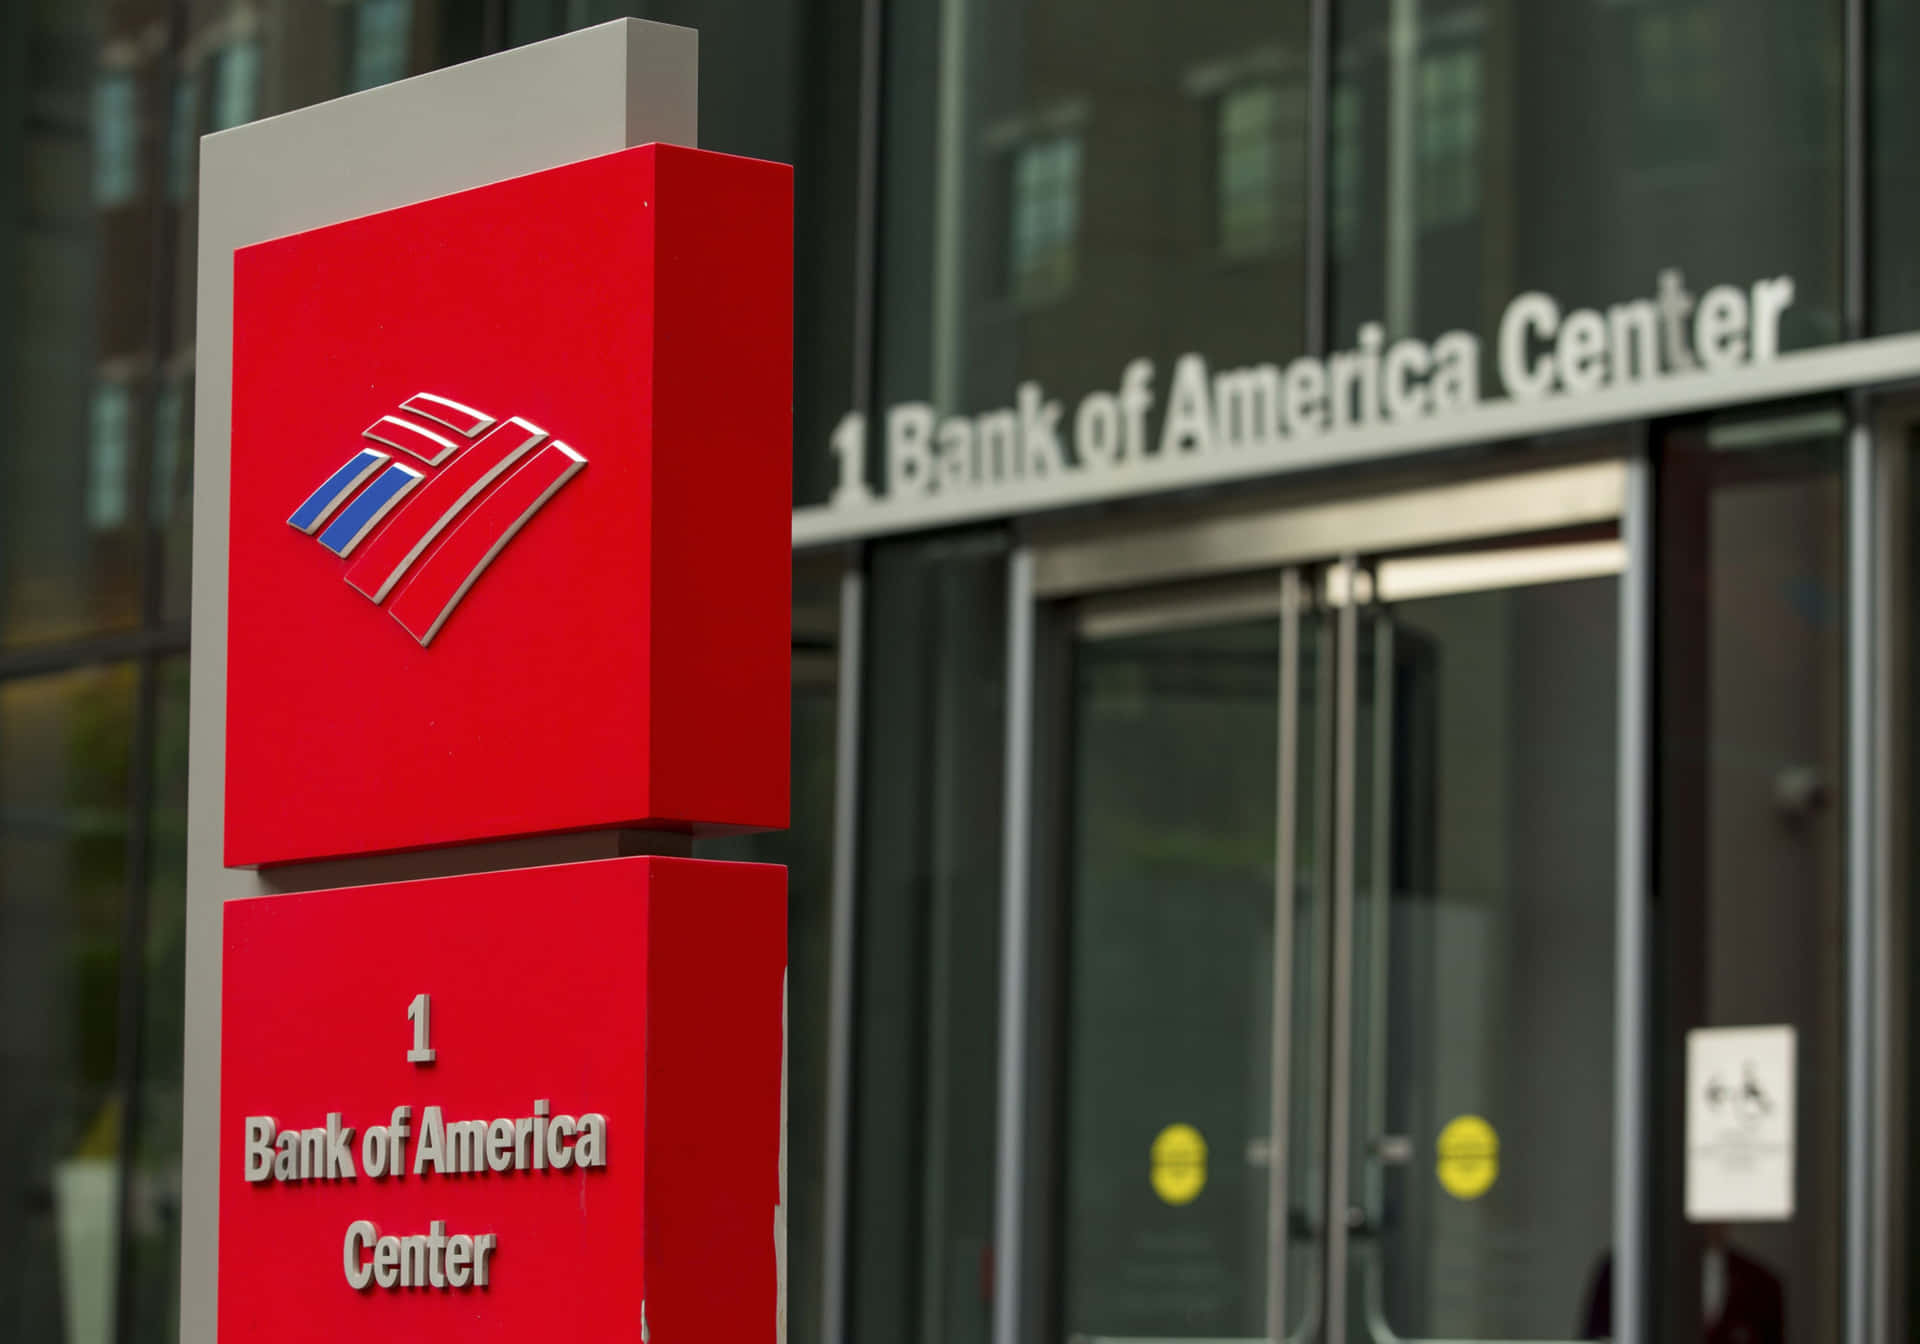 Transaçõesbancárias Com O Bank Of America - Inovação Para Suas Necessidades Financeiras